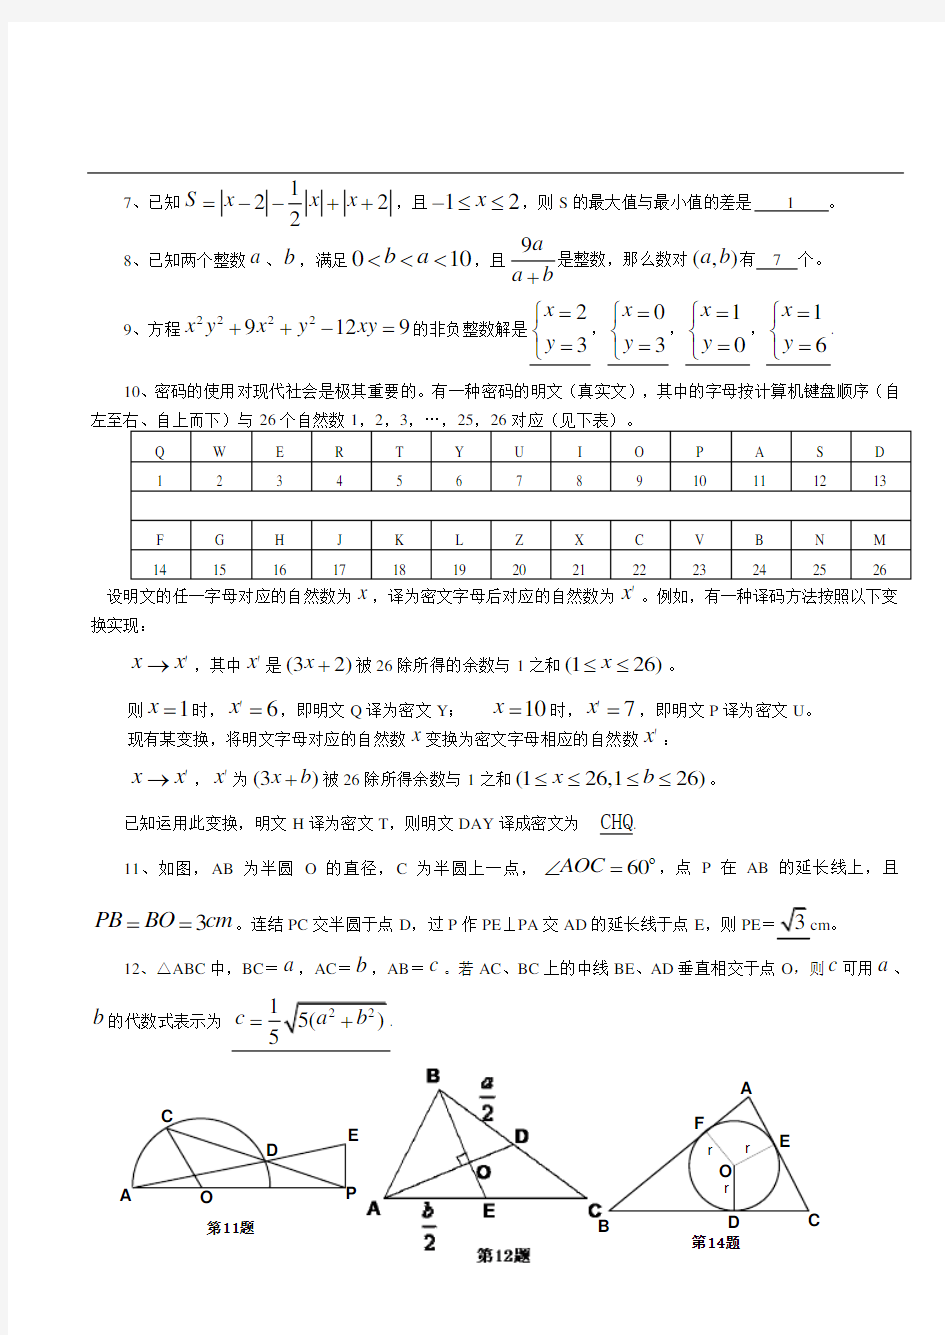 江苏省第十九届初中数学竞赛试题与答案